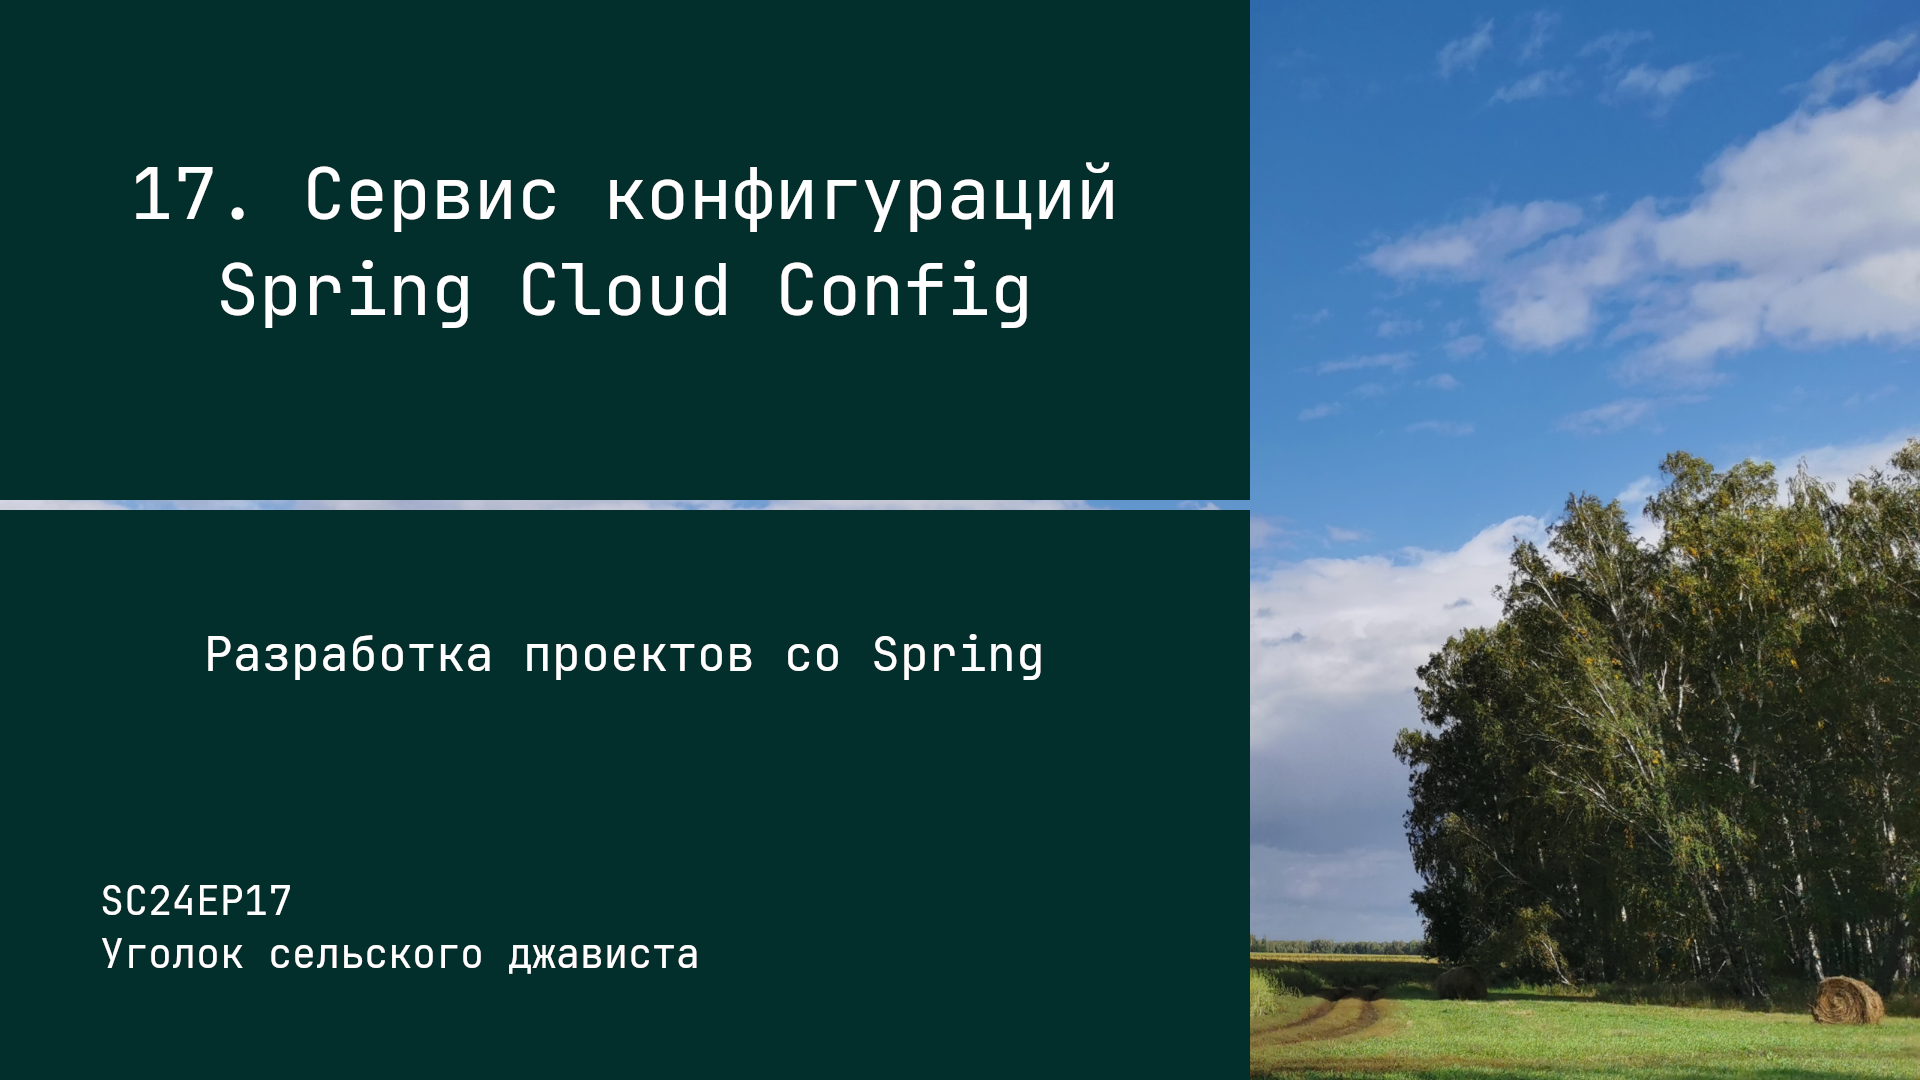 SC24EP17 Сервис конфигураций Spring Cloud Config - Разработка проектов со Spring